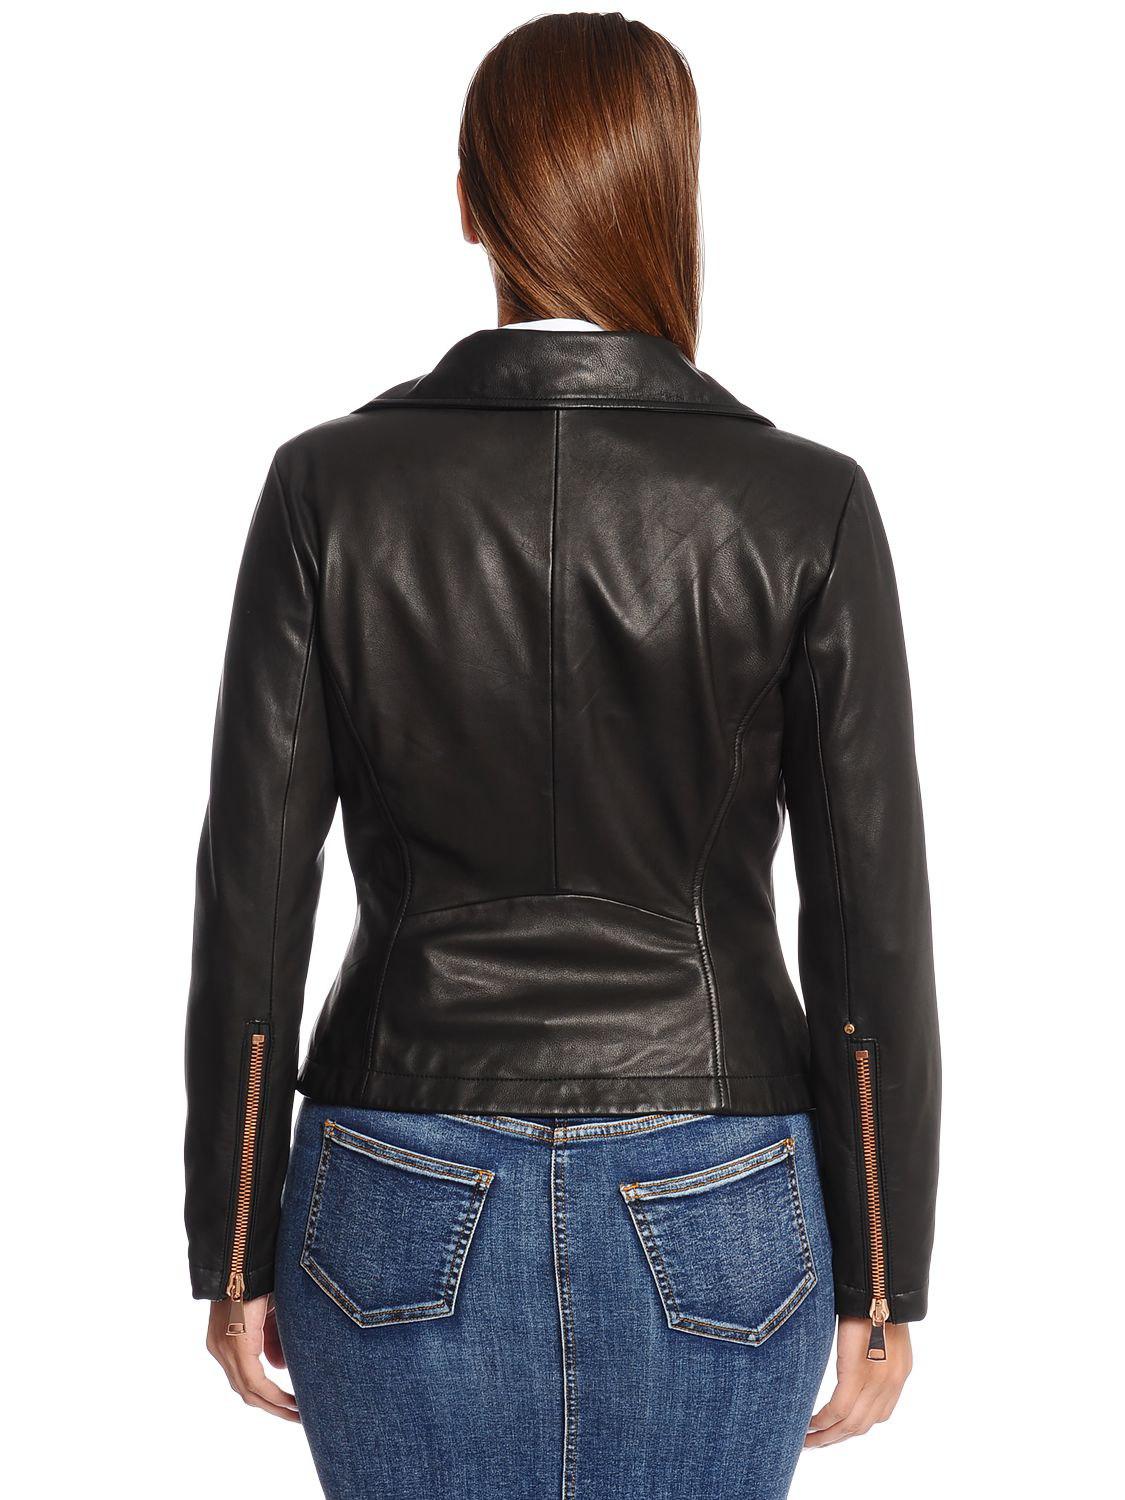 Lyst - Marina Rinaldi Leather Biker Jacket in Black